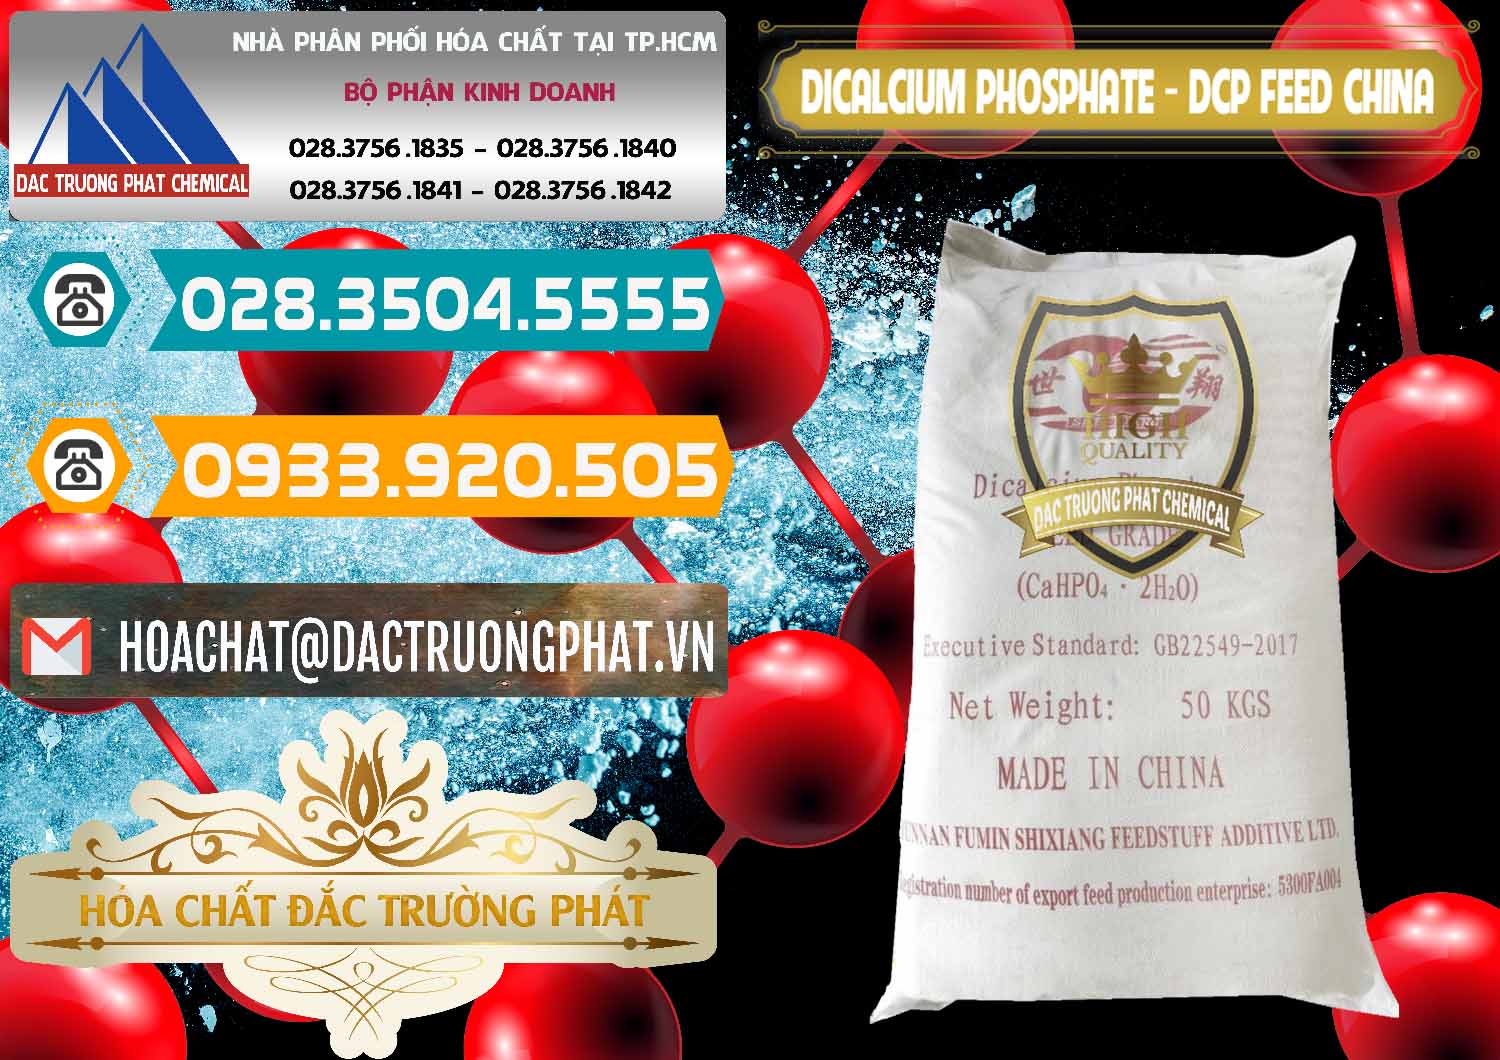 Bán Dicalcium Phosphate - DCP Feed Grade Trung Quốc China - 0296 - Công ty bán và cung cấp hóa chất tại TP.HCM - congtyhoachat.vn